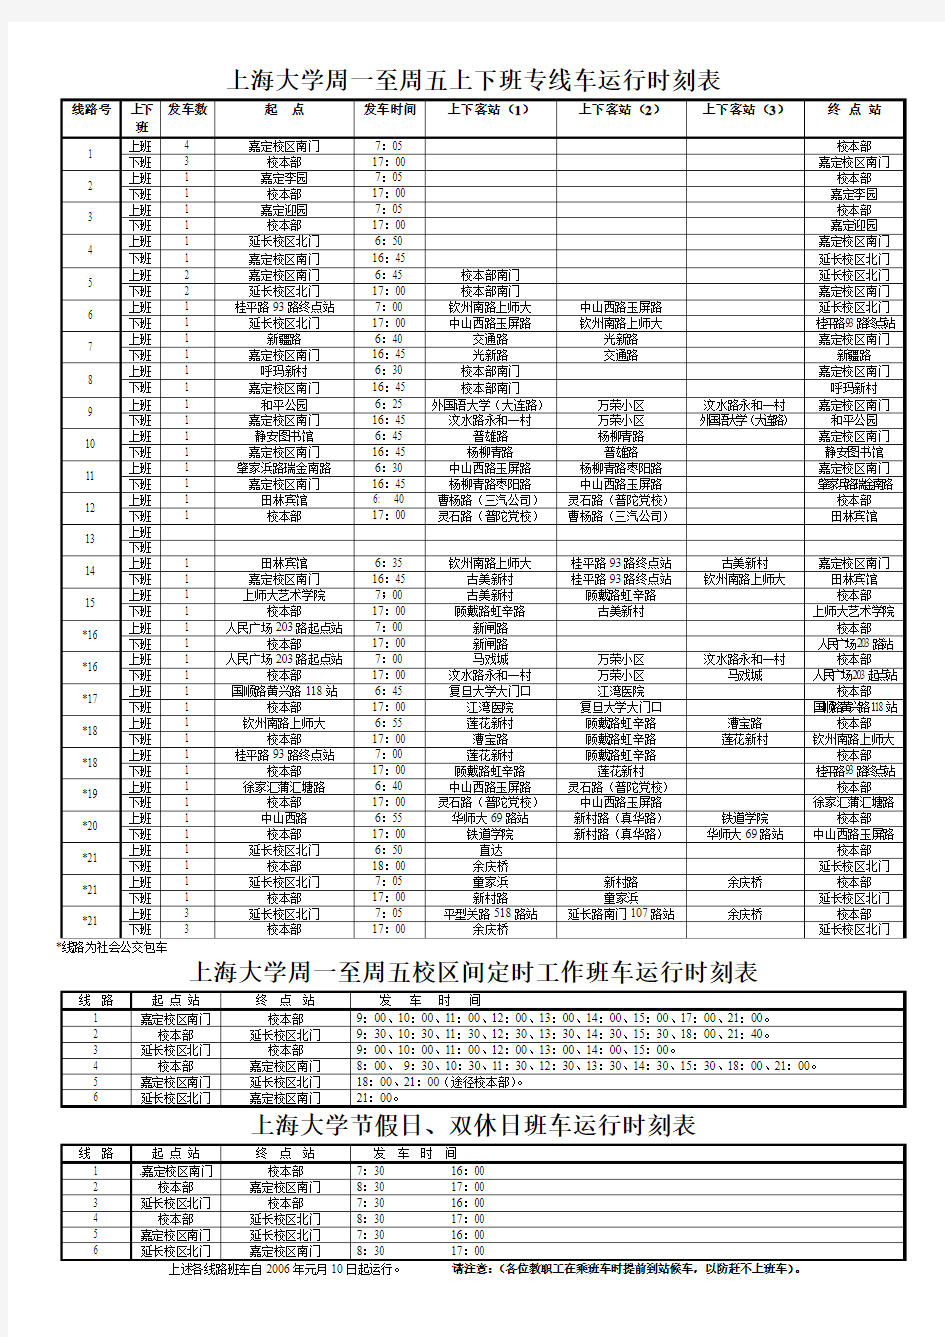 上海大学周一至周五上下班专线车运行时刻表